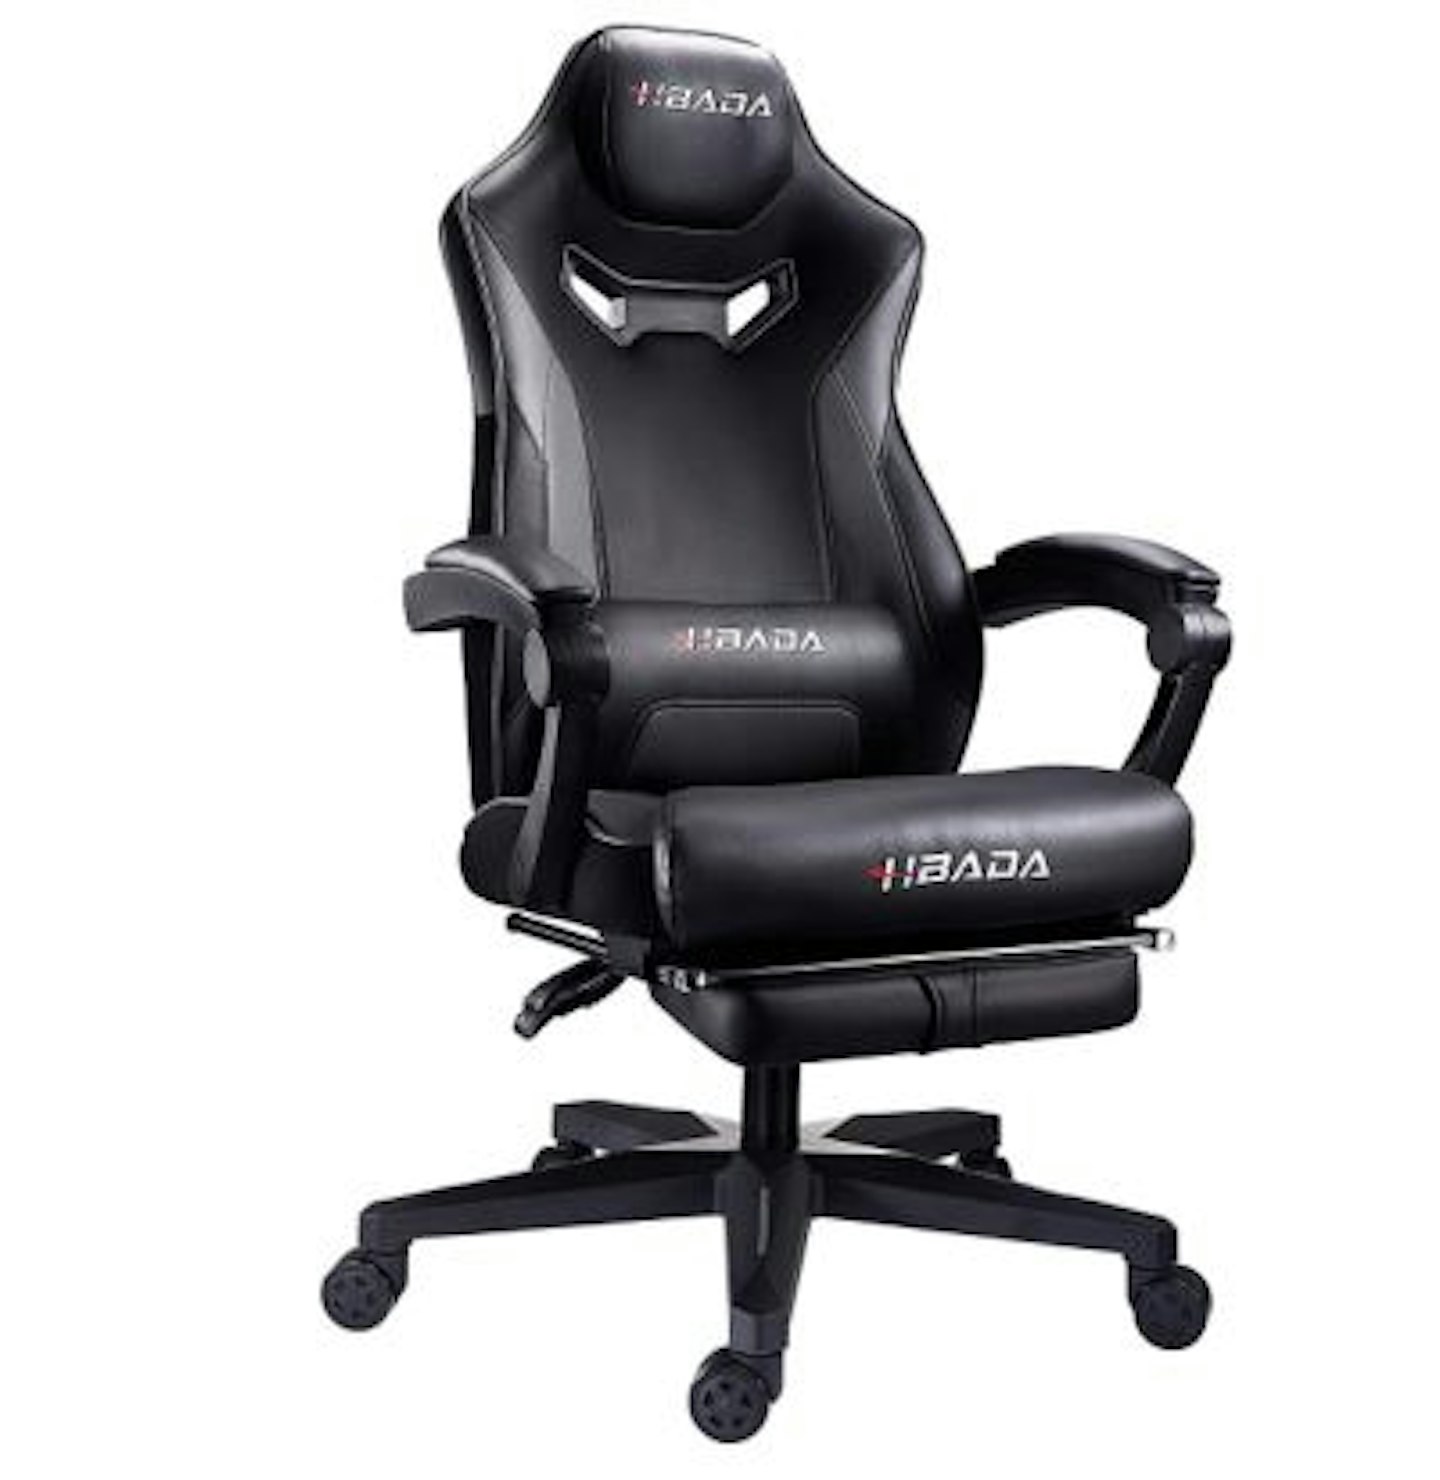 Hbada Ergonomic Gaming Chair